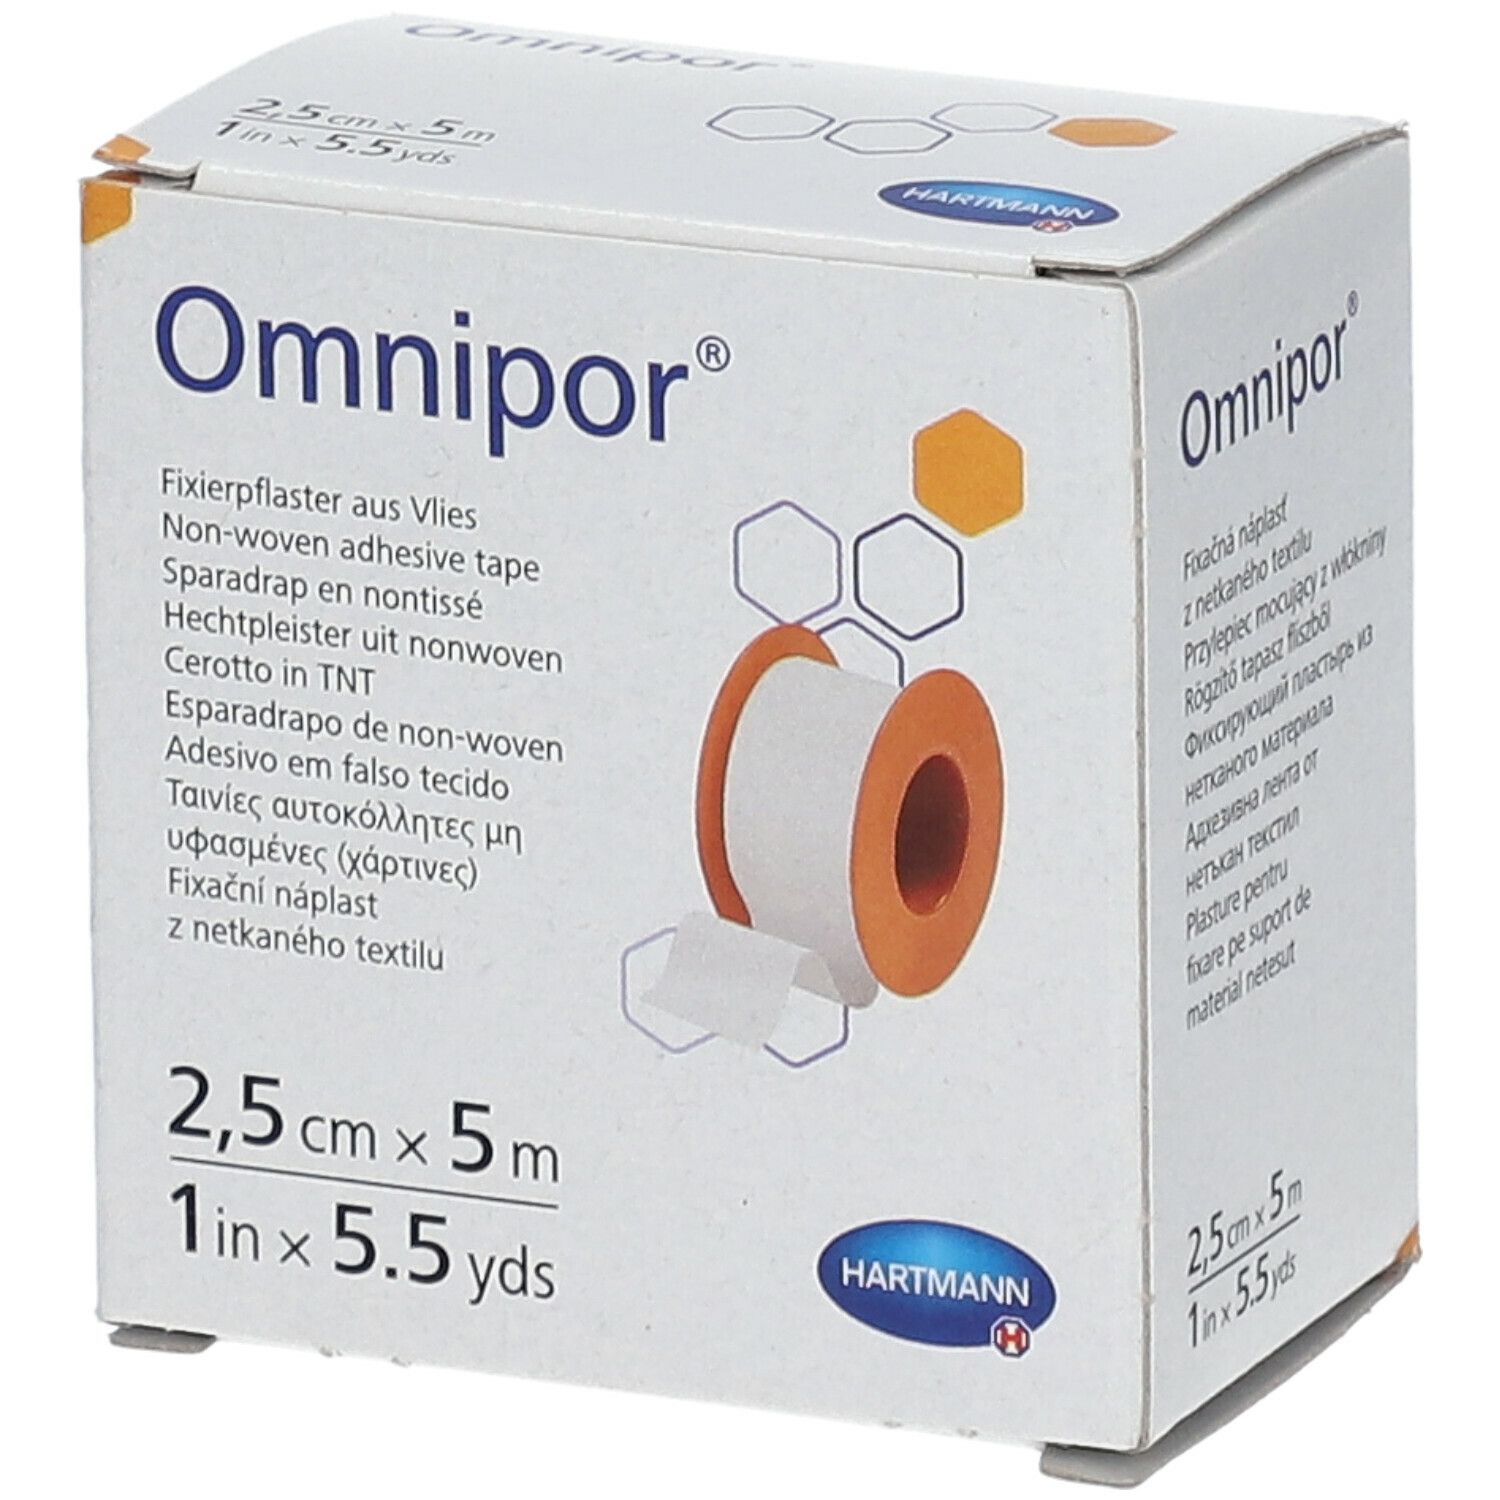 Omnipor® Fixierpflaster Vlies 2,5 cm x 5 m